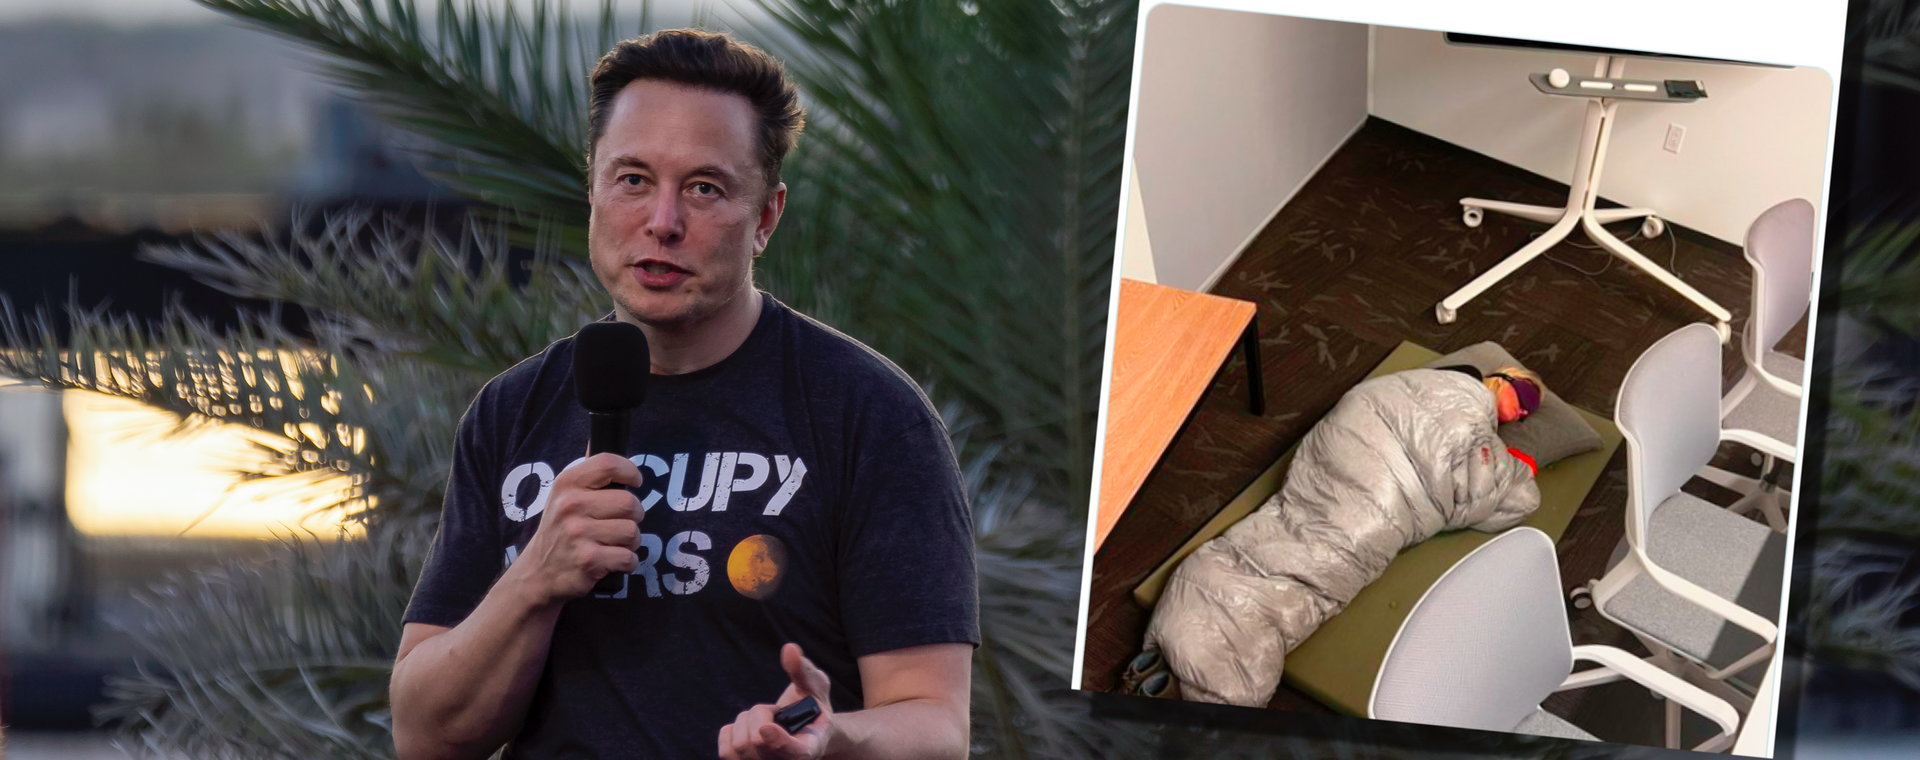 Elon Musk po przejęciu Twittera wprowadził w firmie nowe porządki. Niektórzy pracownicy muszą spać w biurze, by dotrzymać terminów.